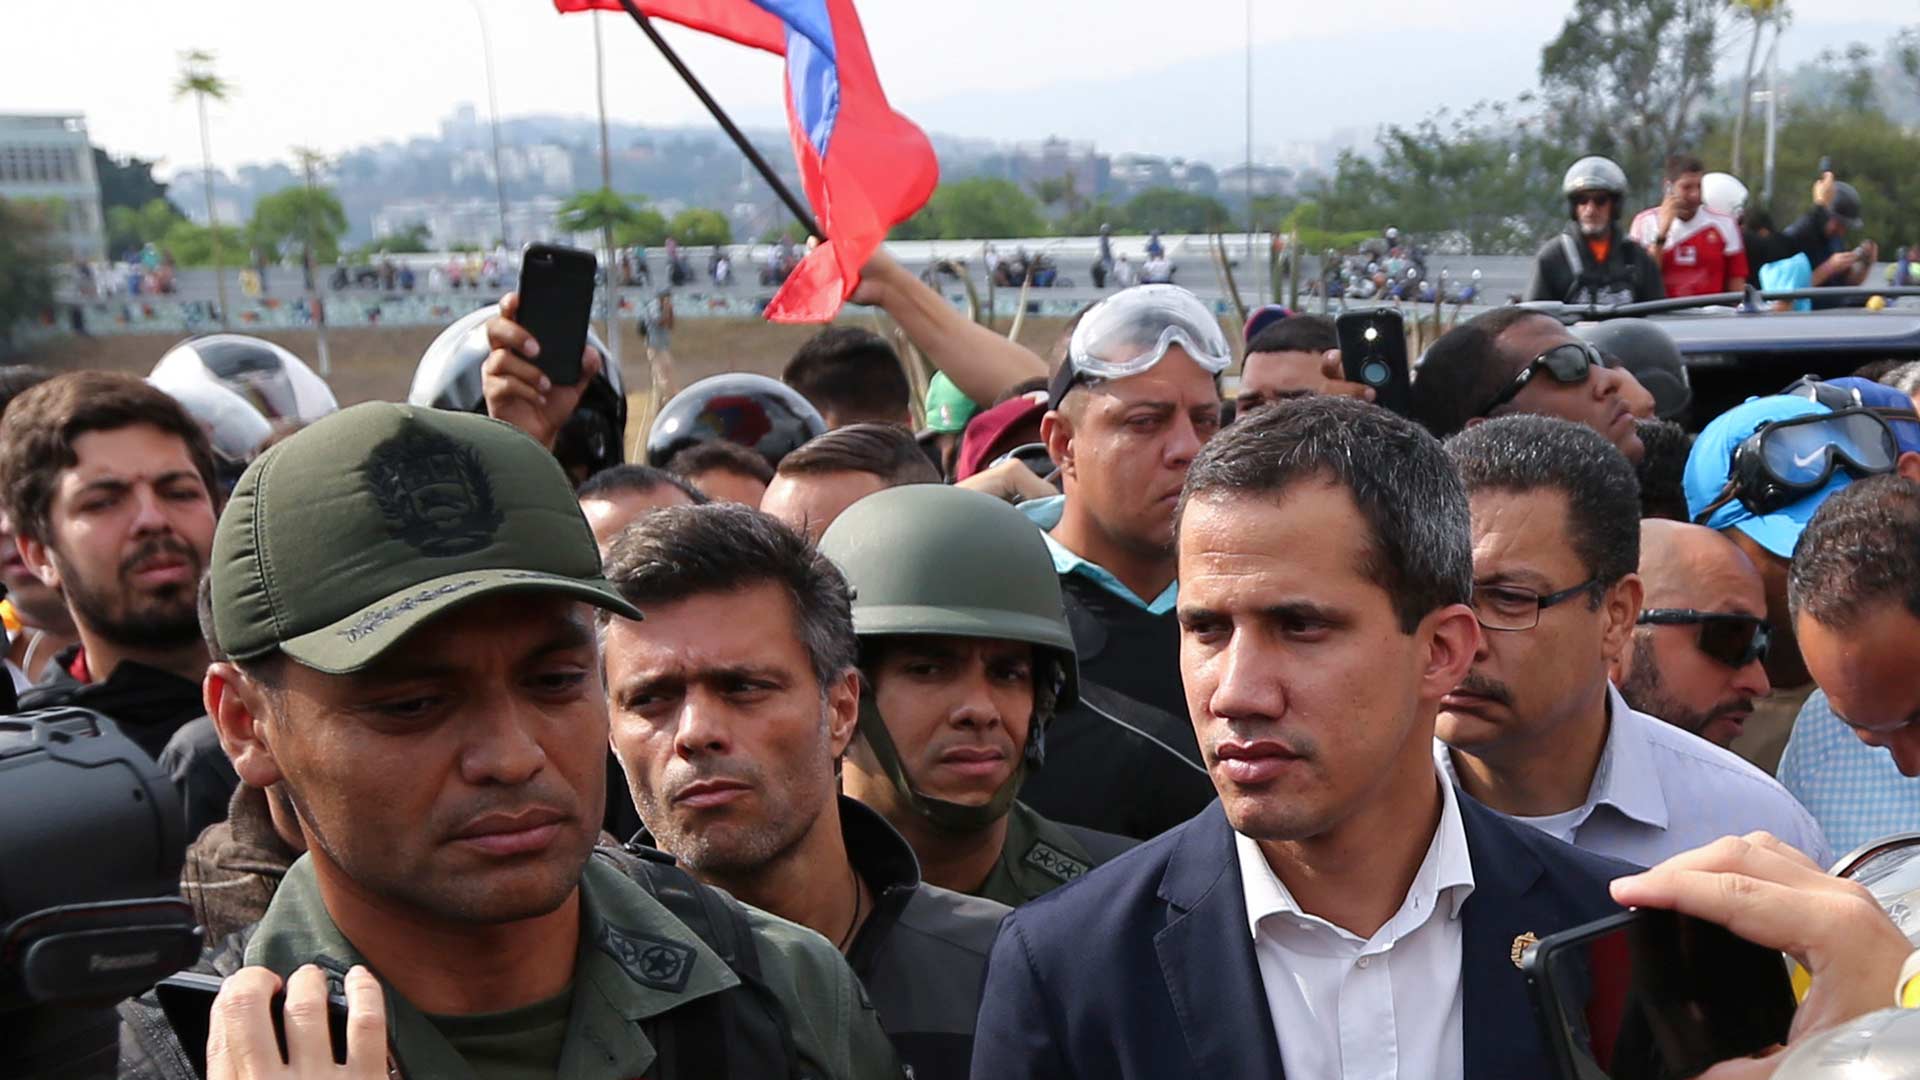 En menos de un minuto: Guaidó libera a Leopoldo López y Casado define a Vox como «extrema derecha»